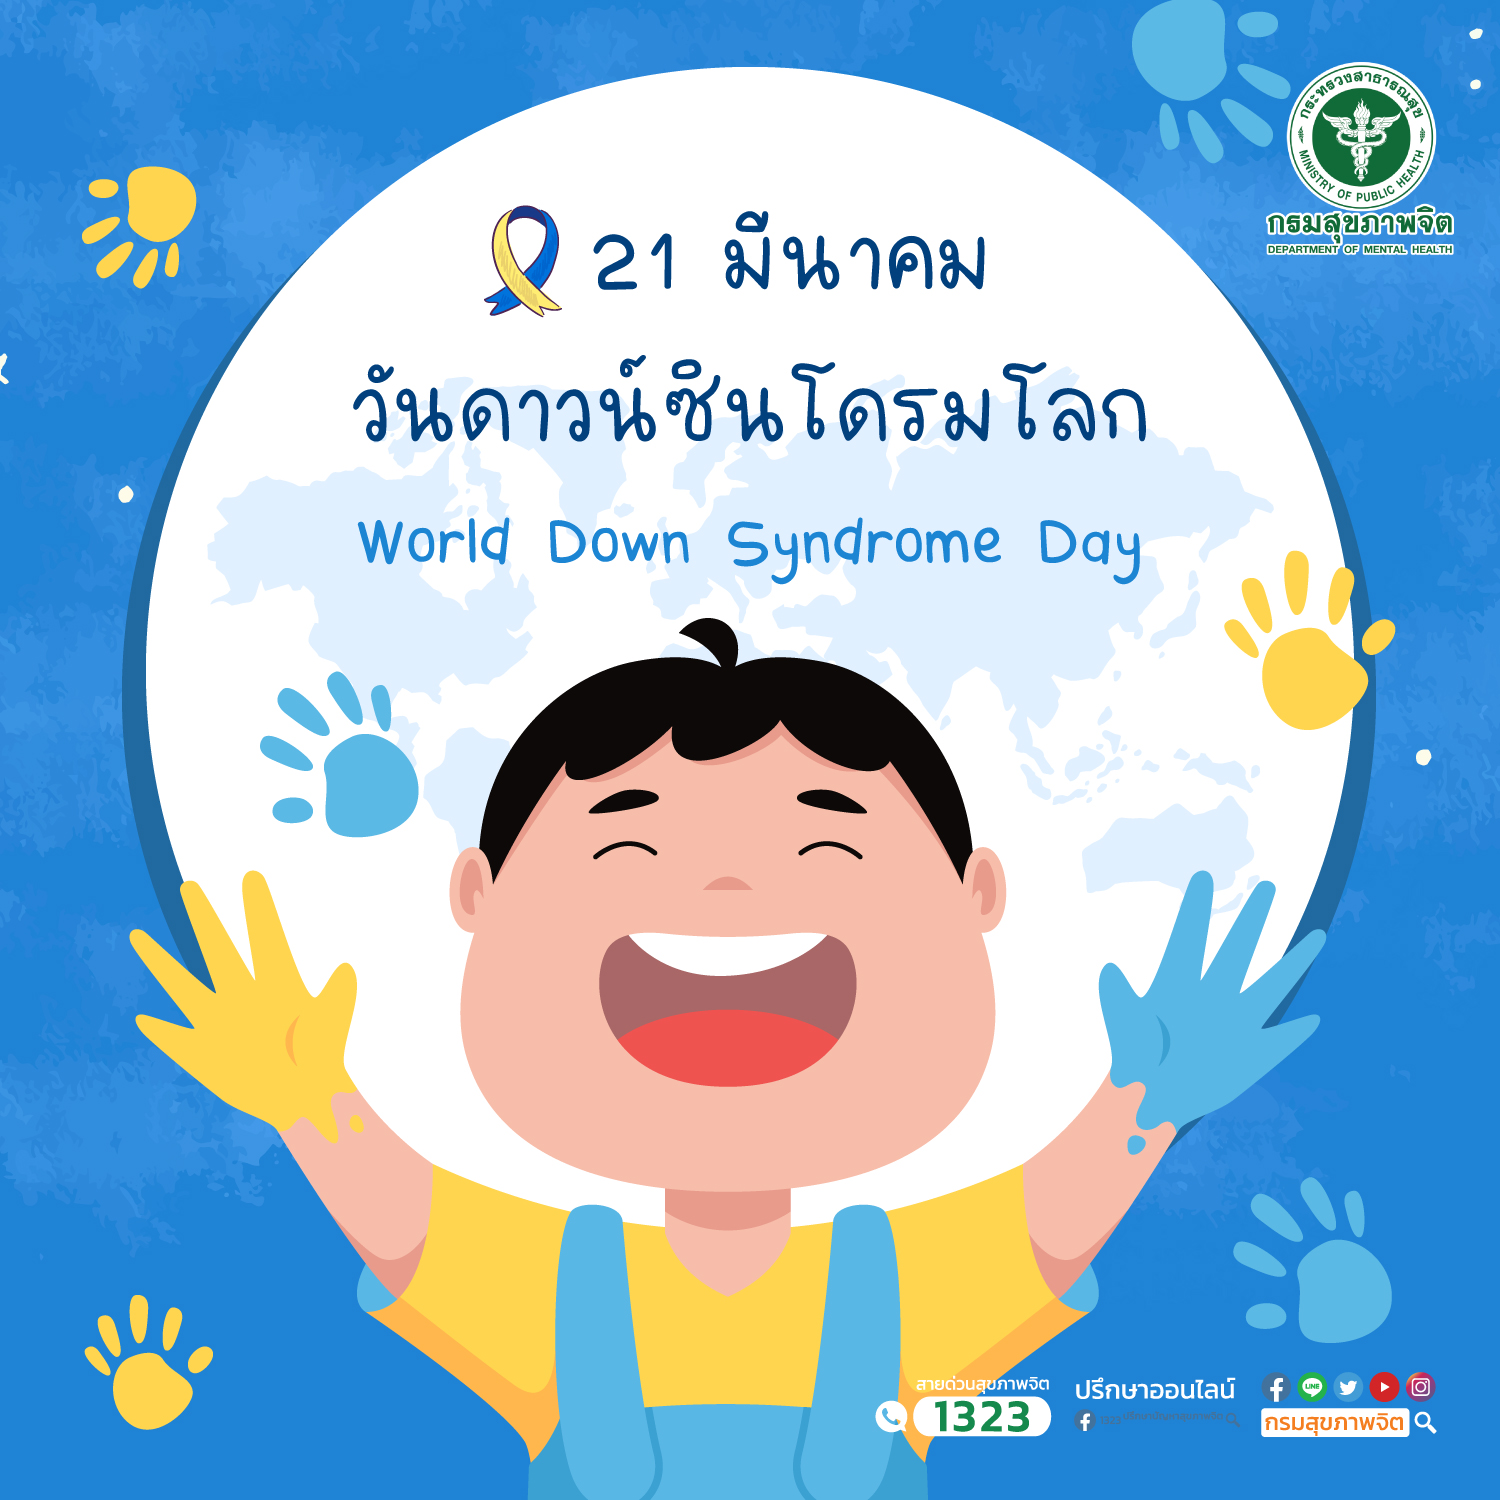 21 มีนาคม วันดาวน์ซินโดรมโลก World Down Syndrome Day